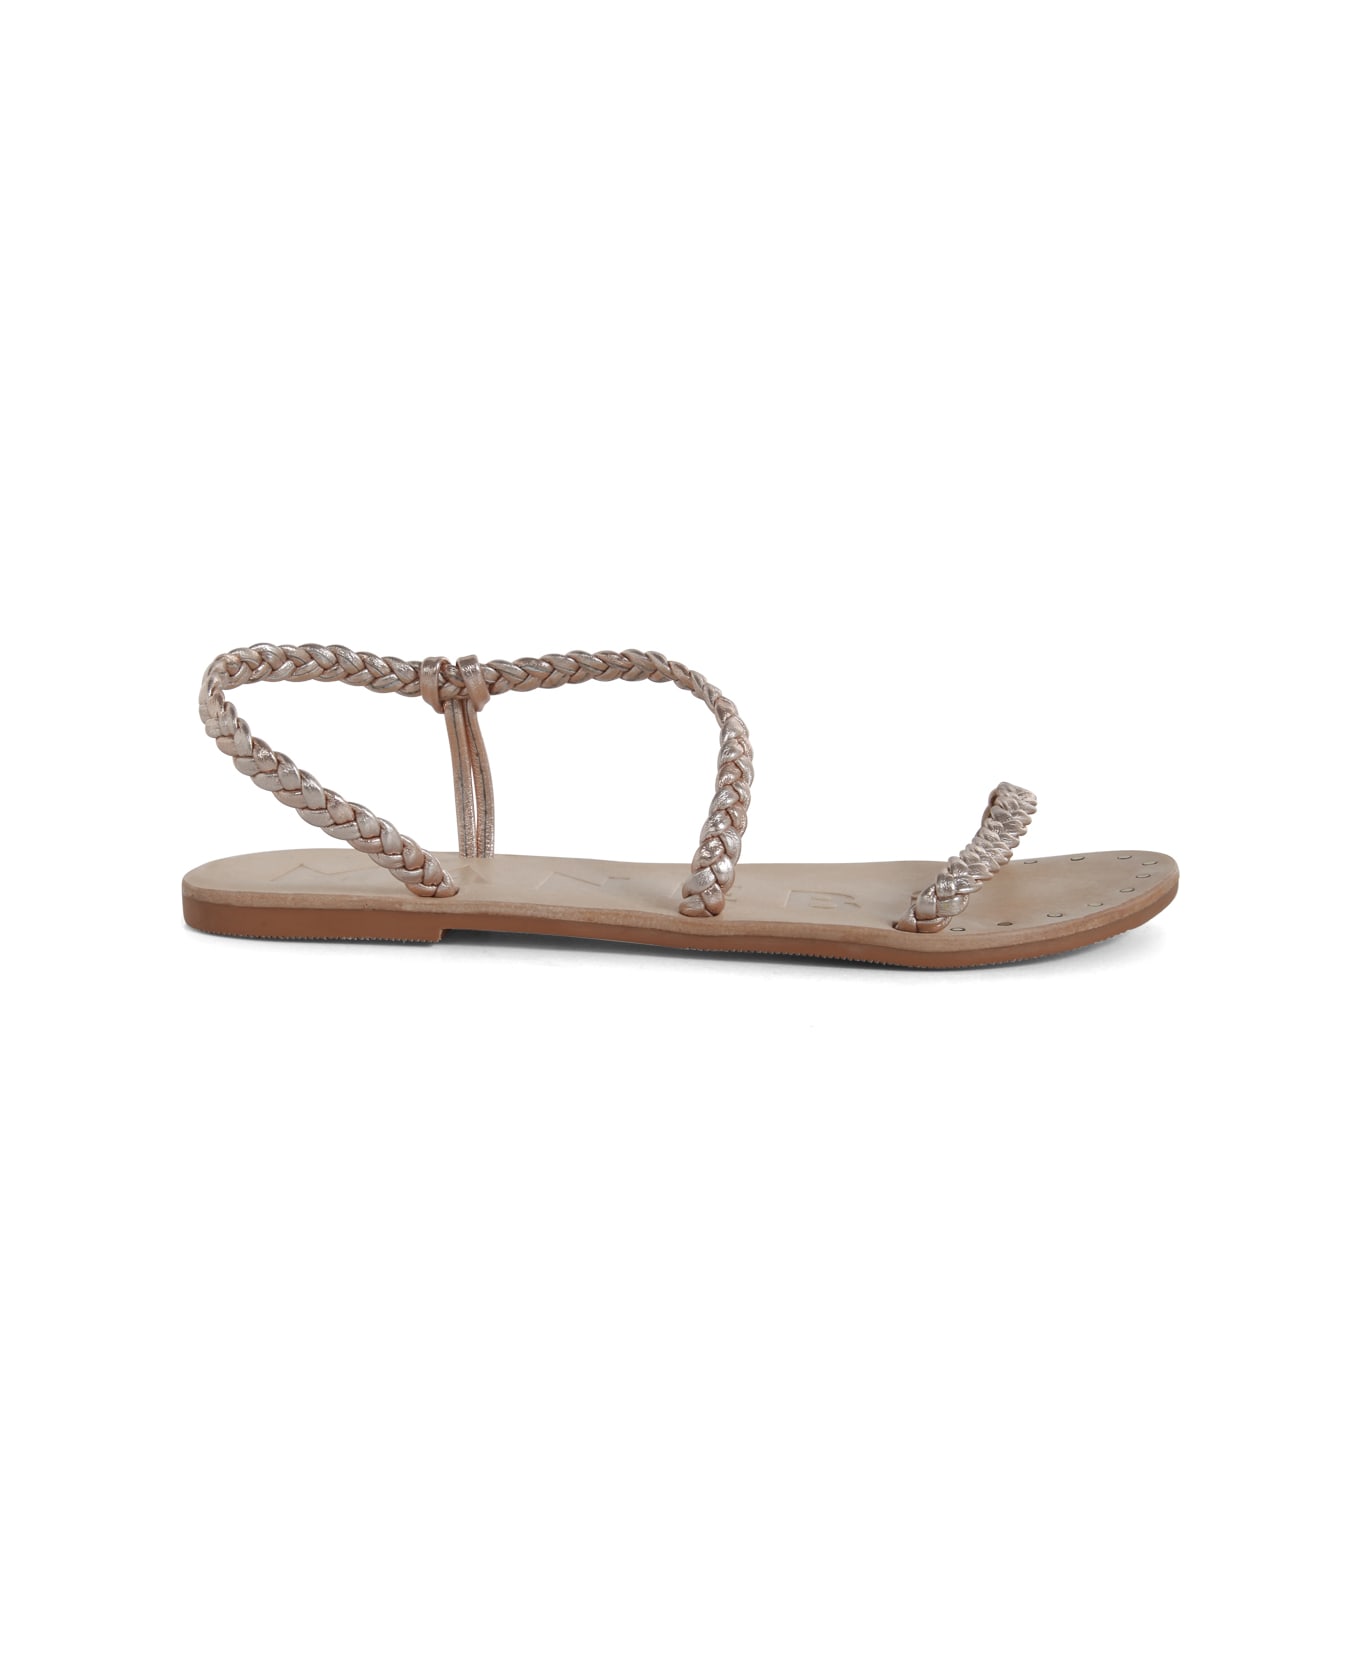 Manebi Leather Braid Sandals - Platinum